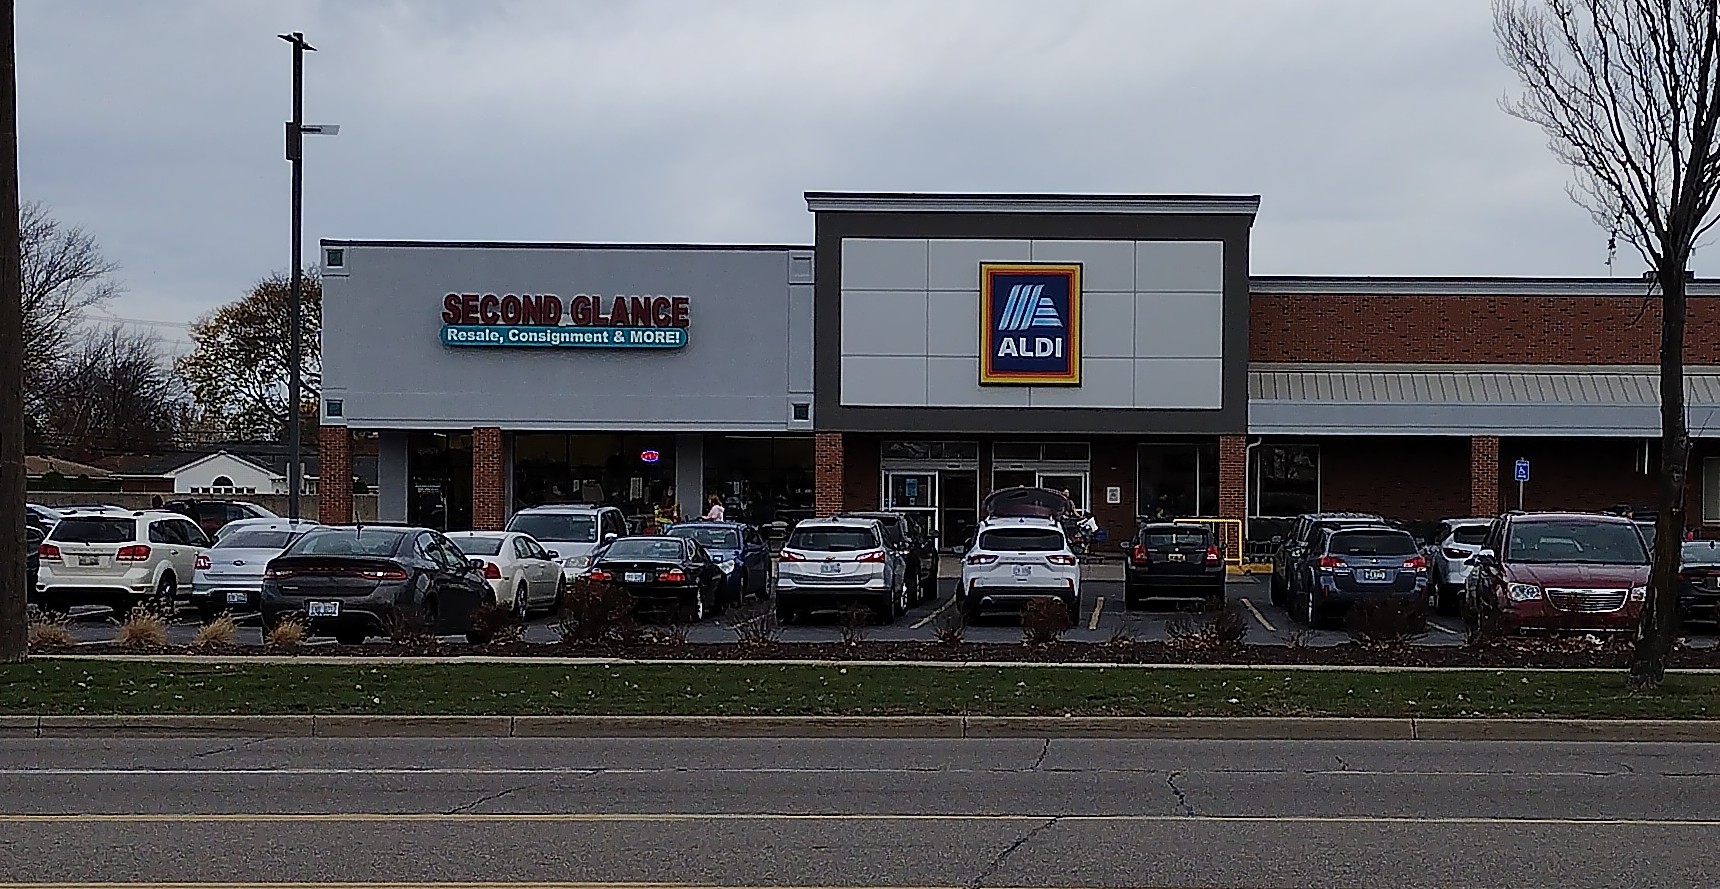 Second Glance Resale Shop